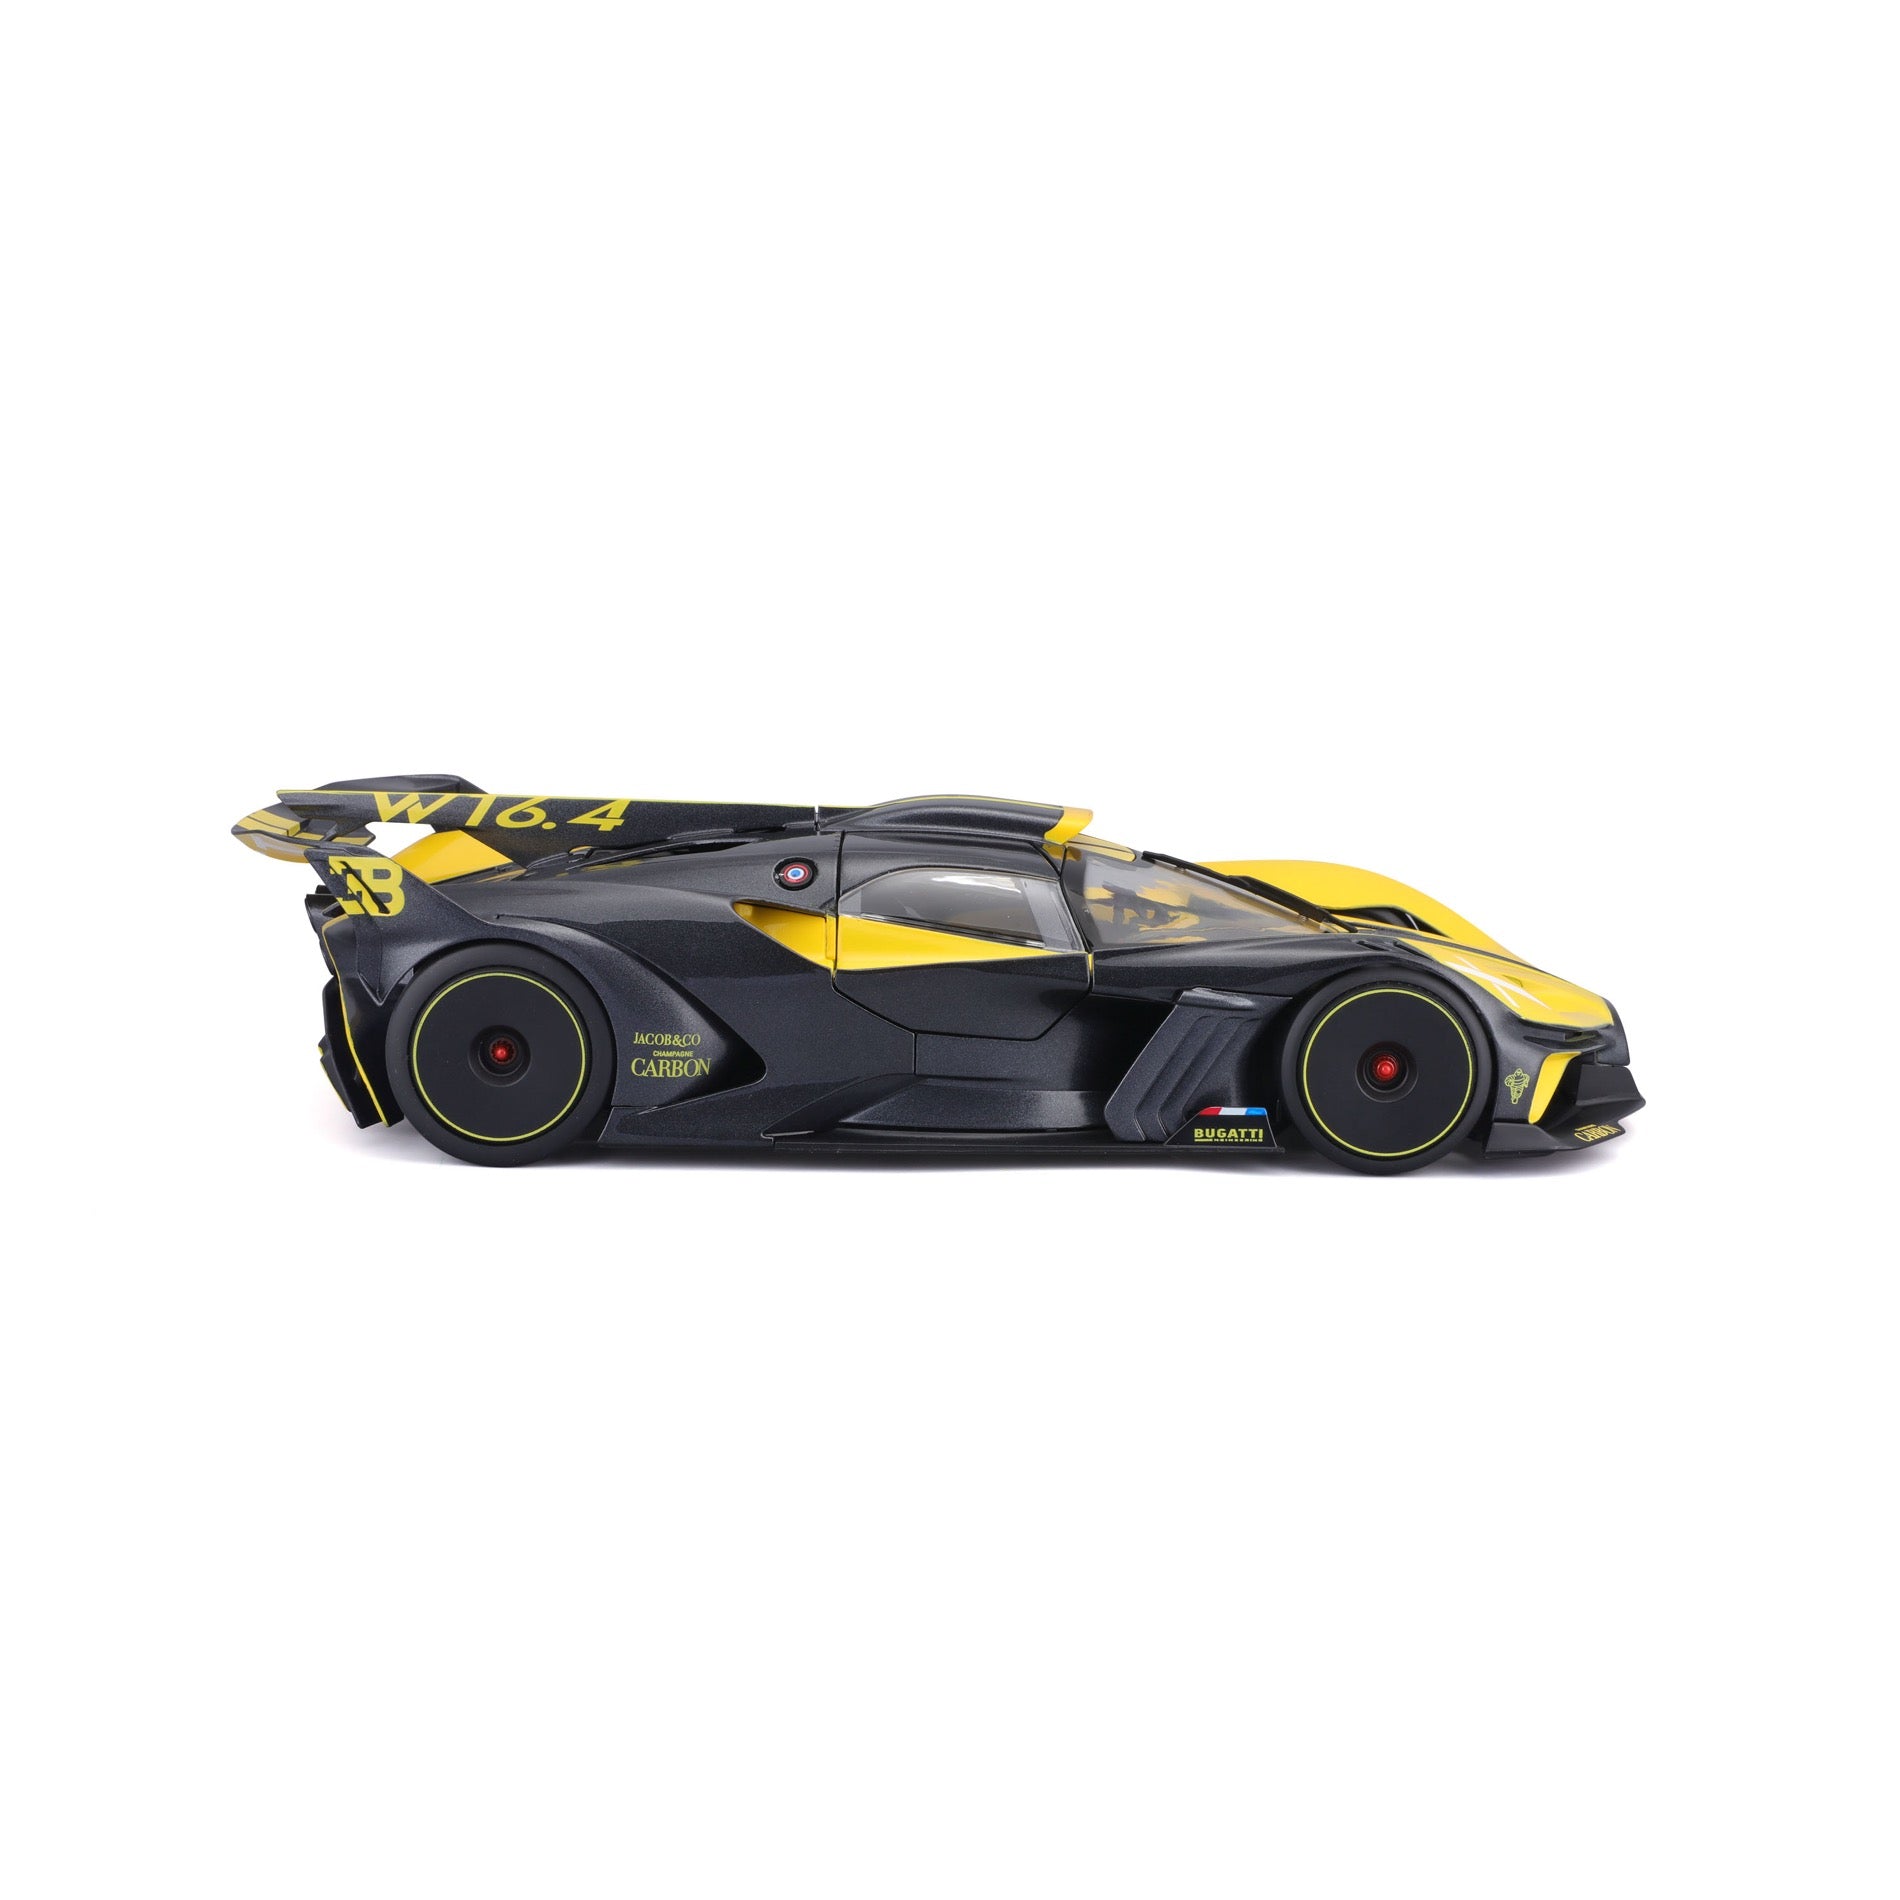 Burago 1/18 Scale Diecast 18-11047 - Bugatti Bolide - Black/Yellow